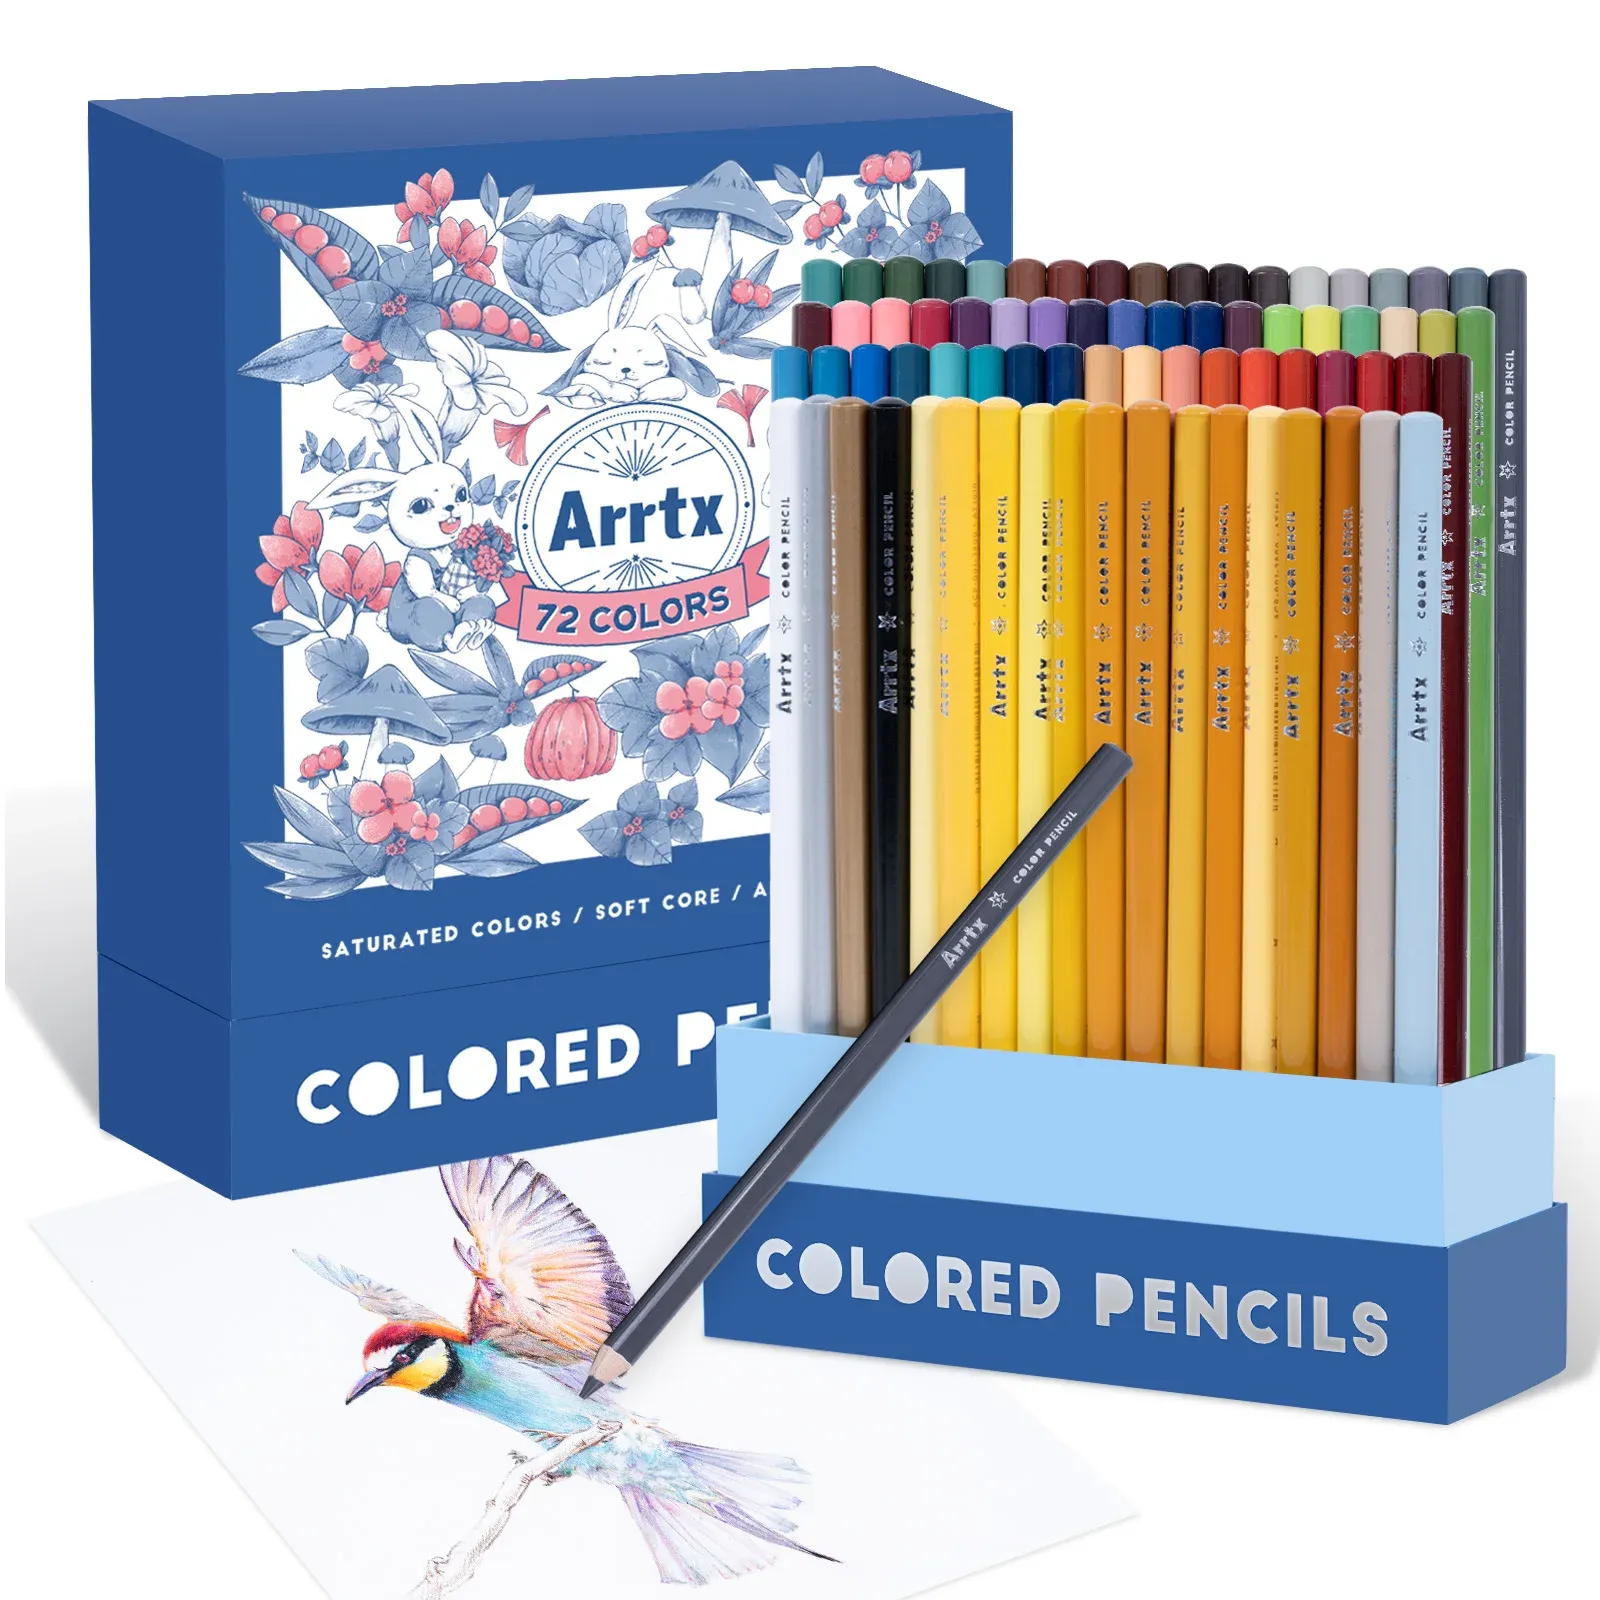 鉛筆ARRTXアーティスト72保護垂直インサートボックスオーガナイザープレミアムソフトリード明るい色の描画用の色付き鉛筆